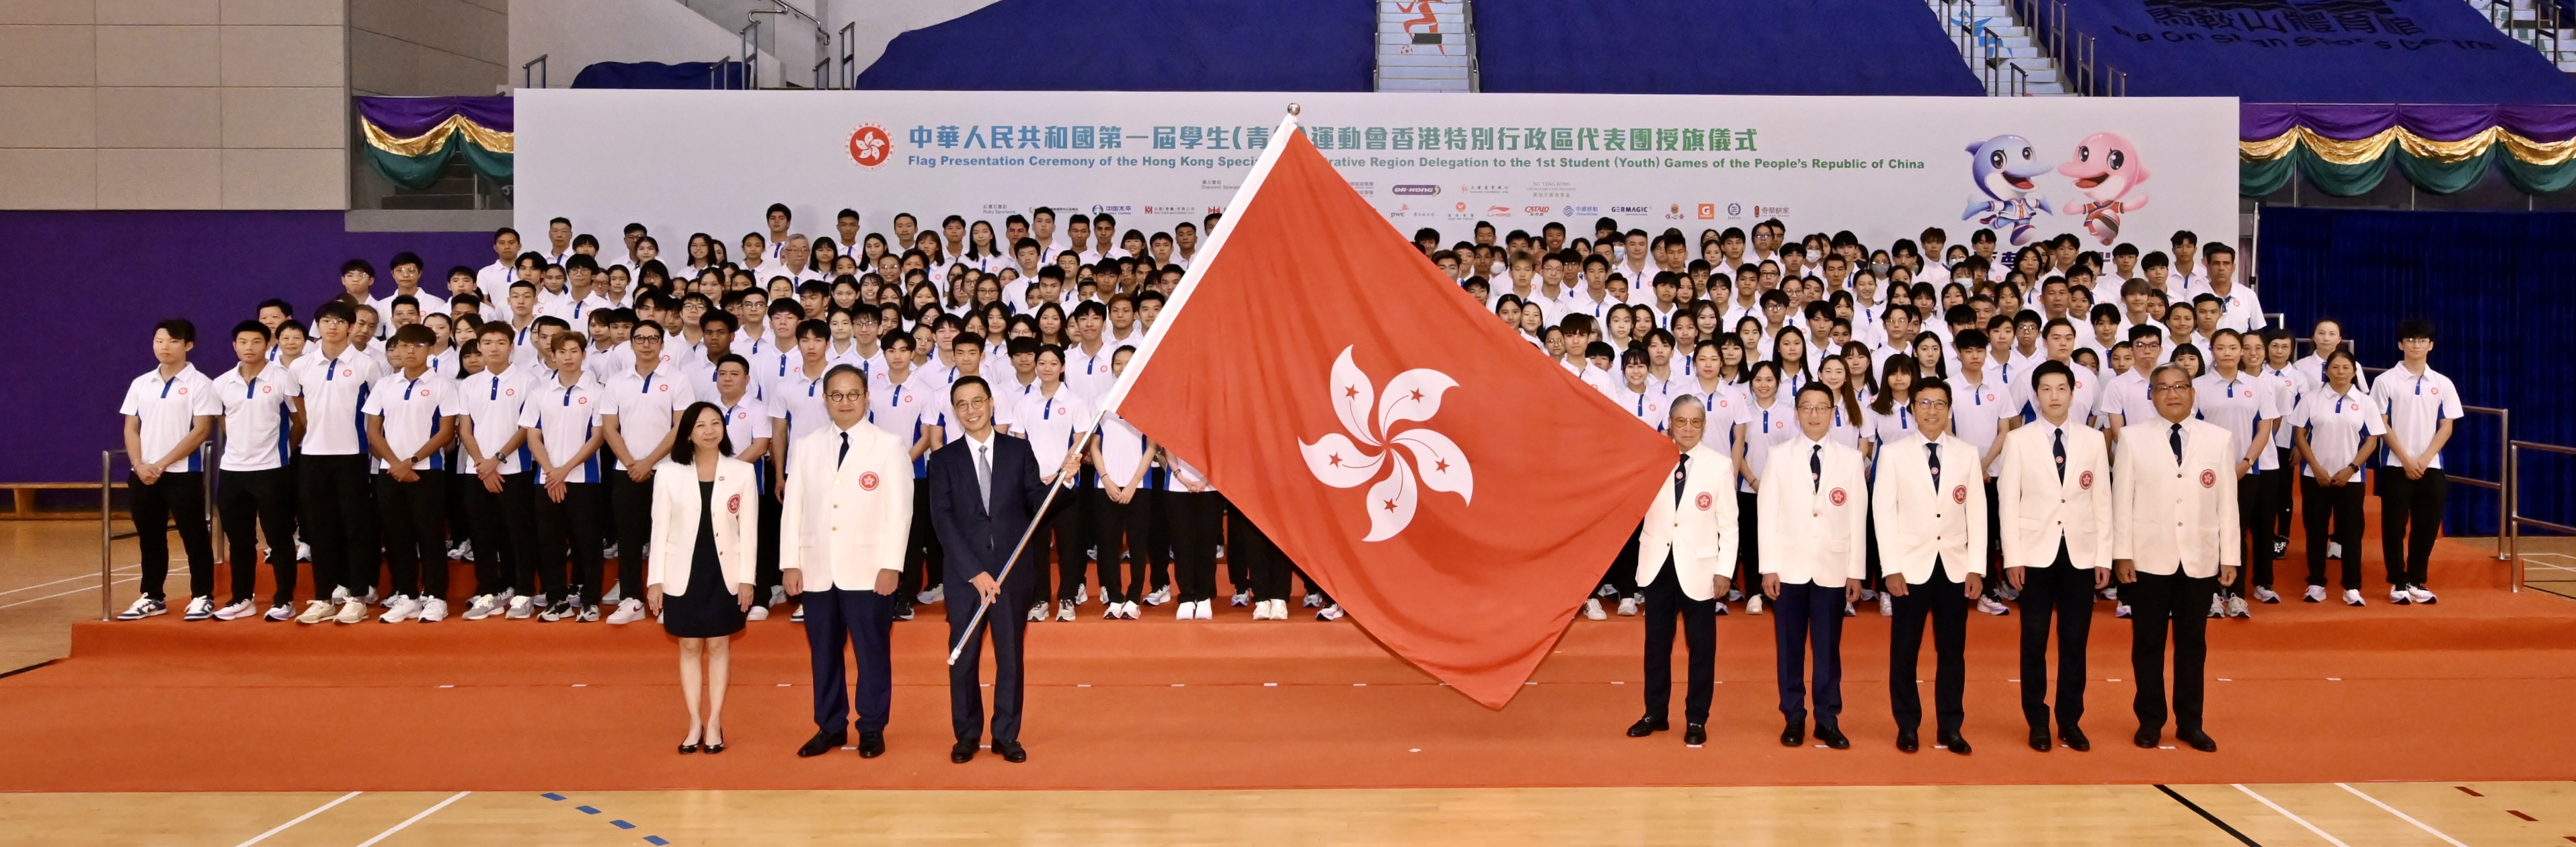 香港特别行政区代表团授旗仪式1